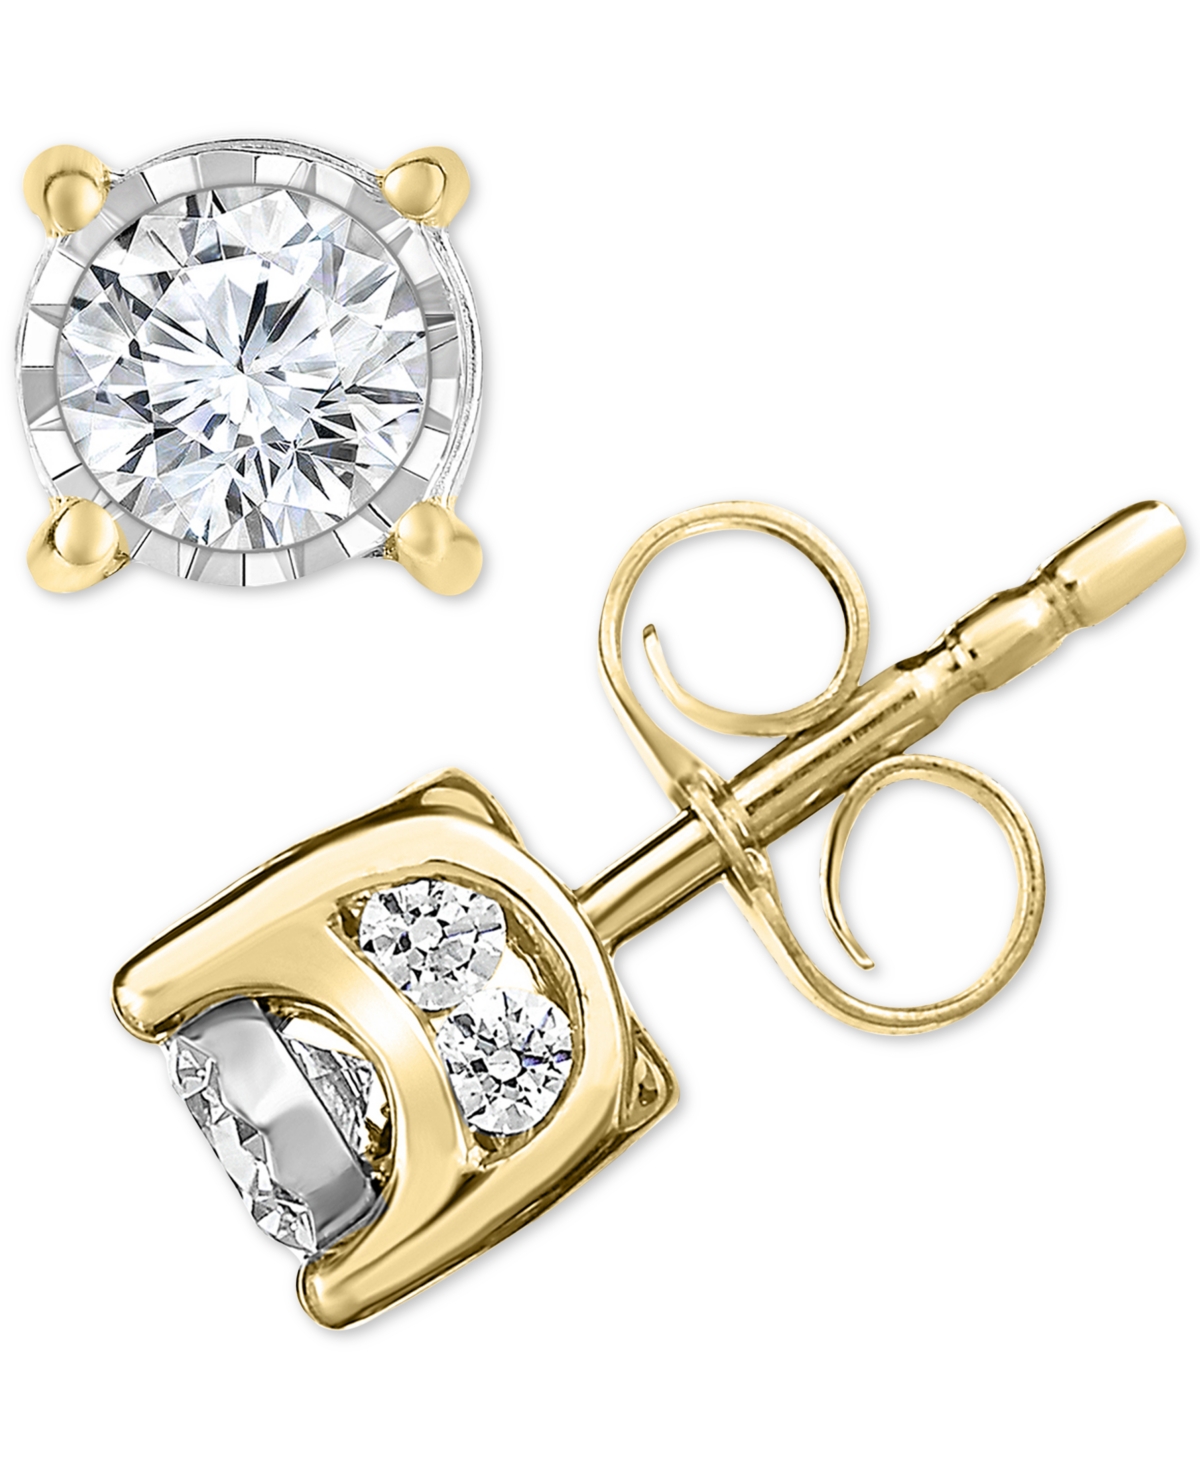 Diamond Stud Earrings (1/2 ct. t.w.) in 14k Gold - Rose Gold